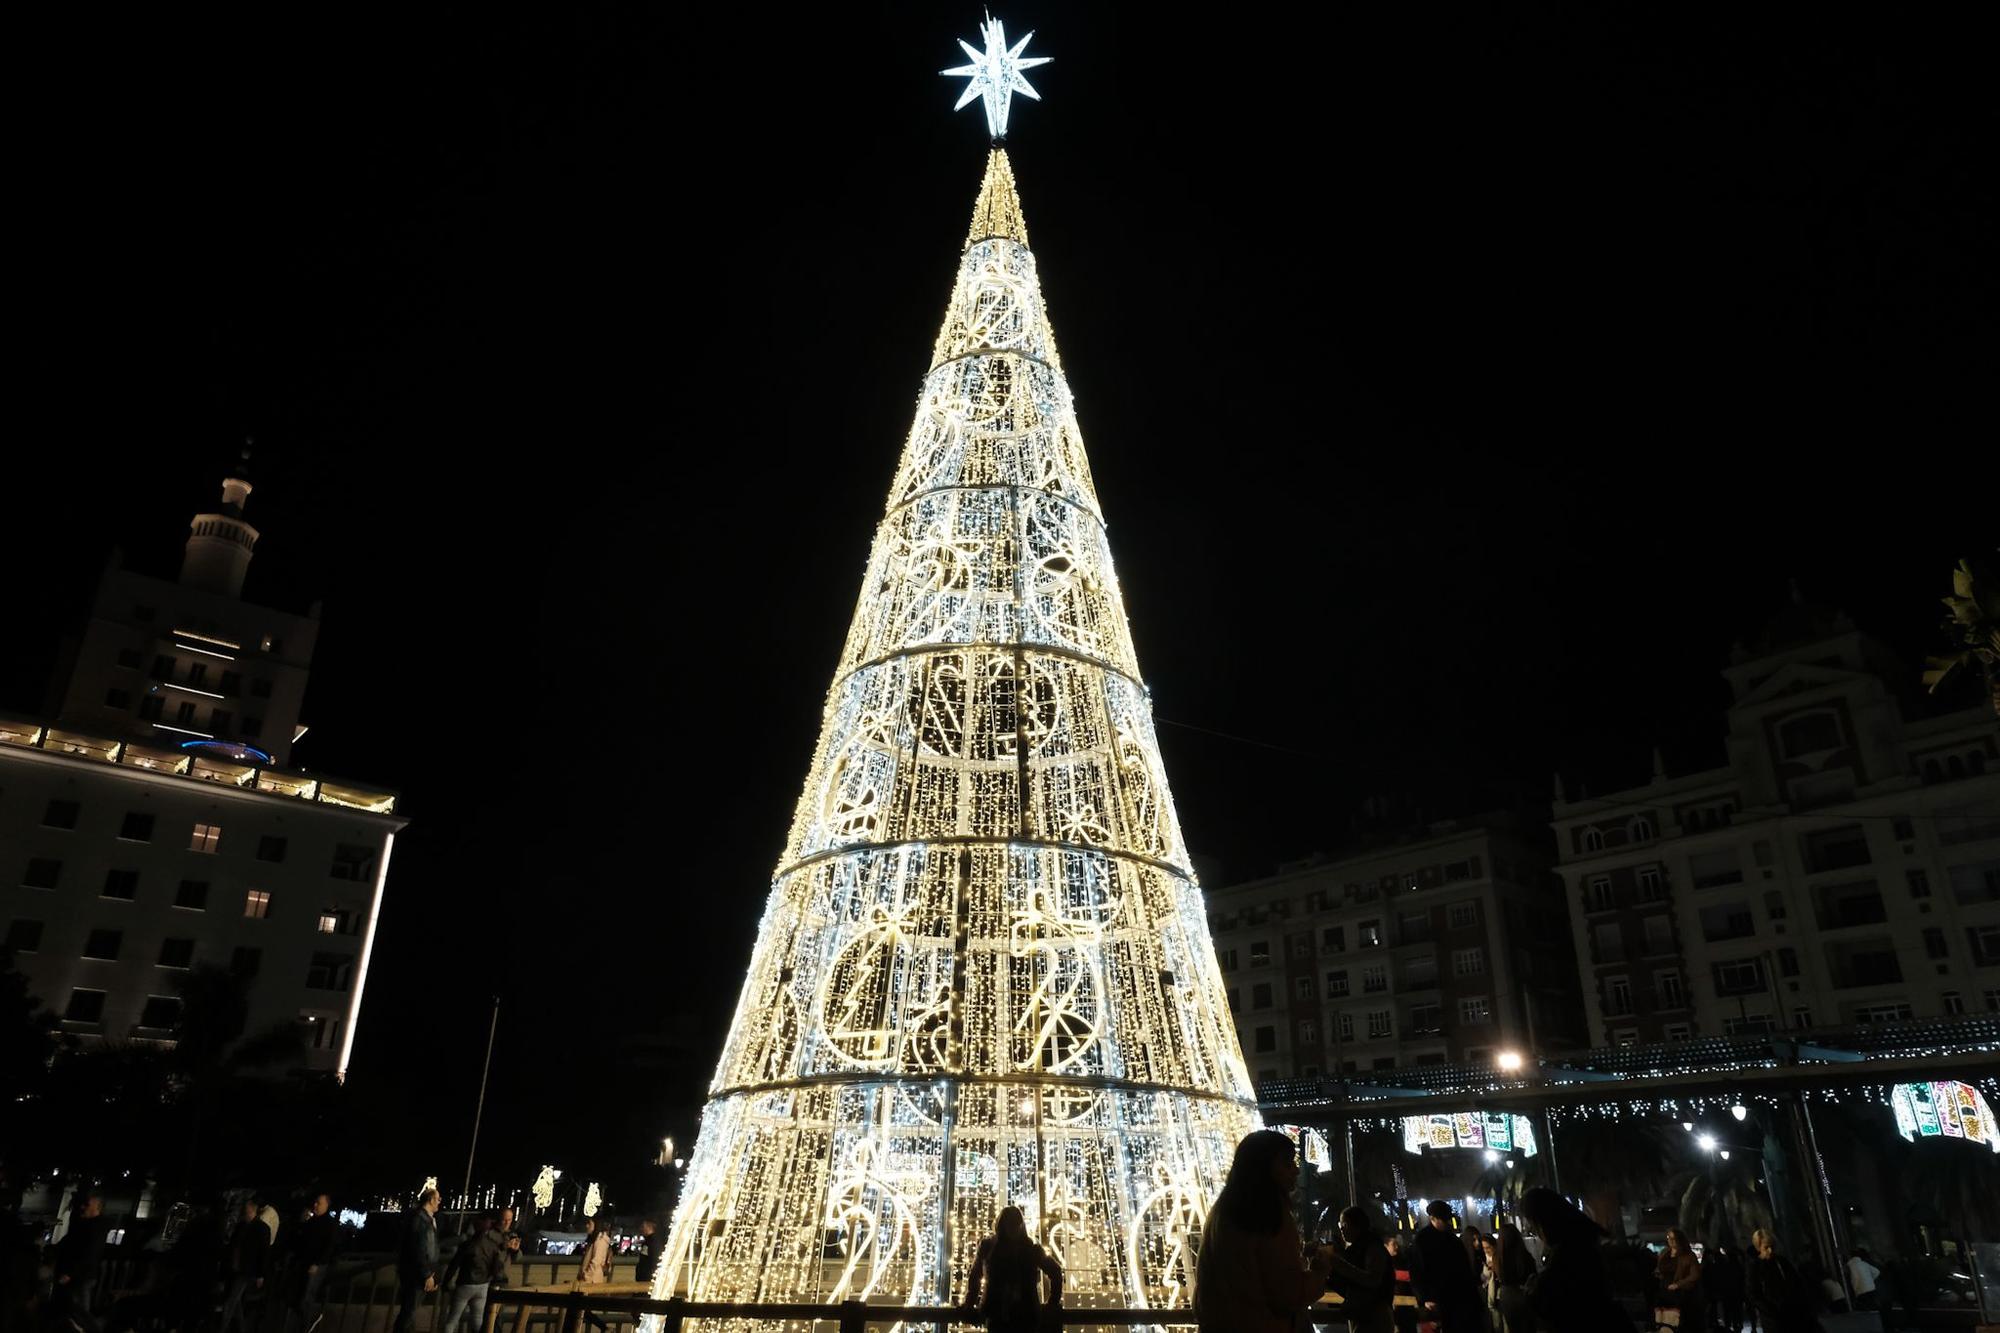 Navidad en Málaga | La calle Larios enciende sus luces de Navidad